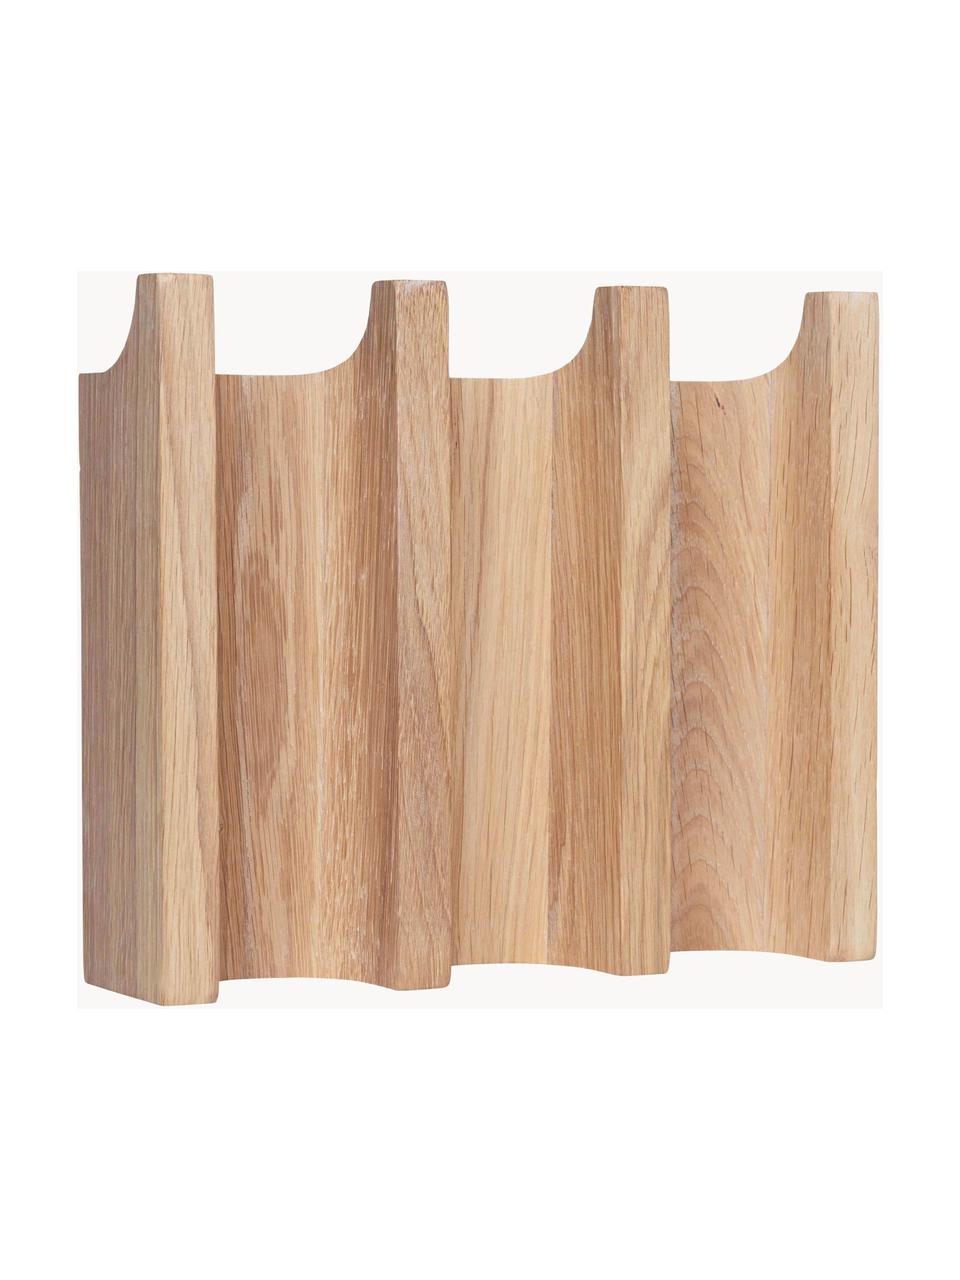 Wieszak ścienny z drewna dębowego Column, Drewno dębowe, Drewno dębowe, S 21 x W 18 cm